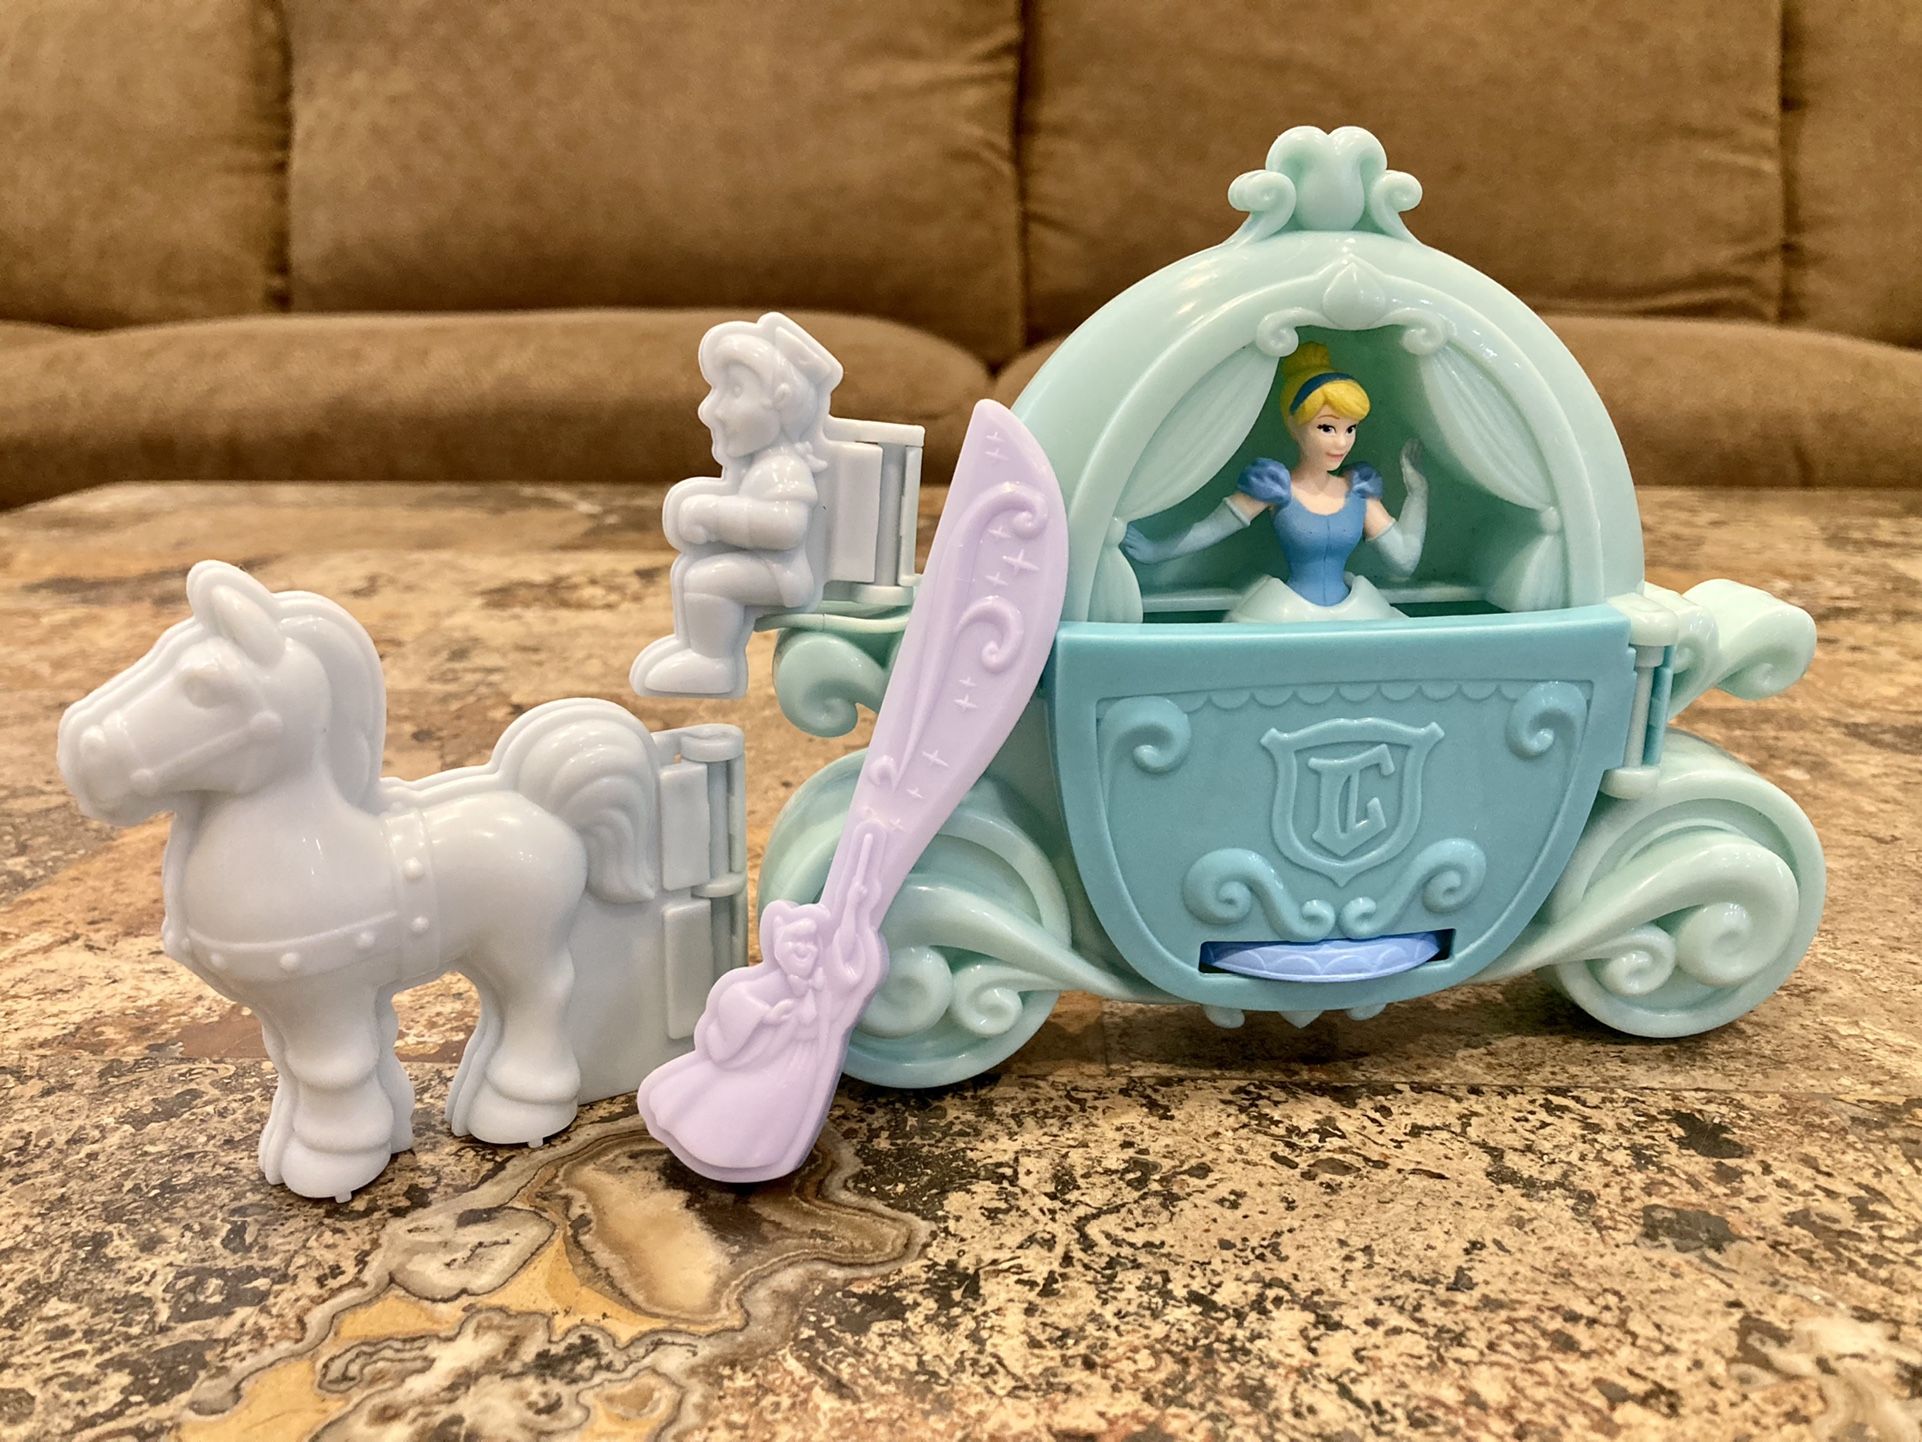 Play-Doh Royal Carriage Featuring Disney Princess Cinderella Set